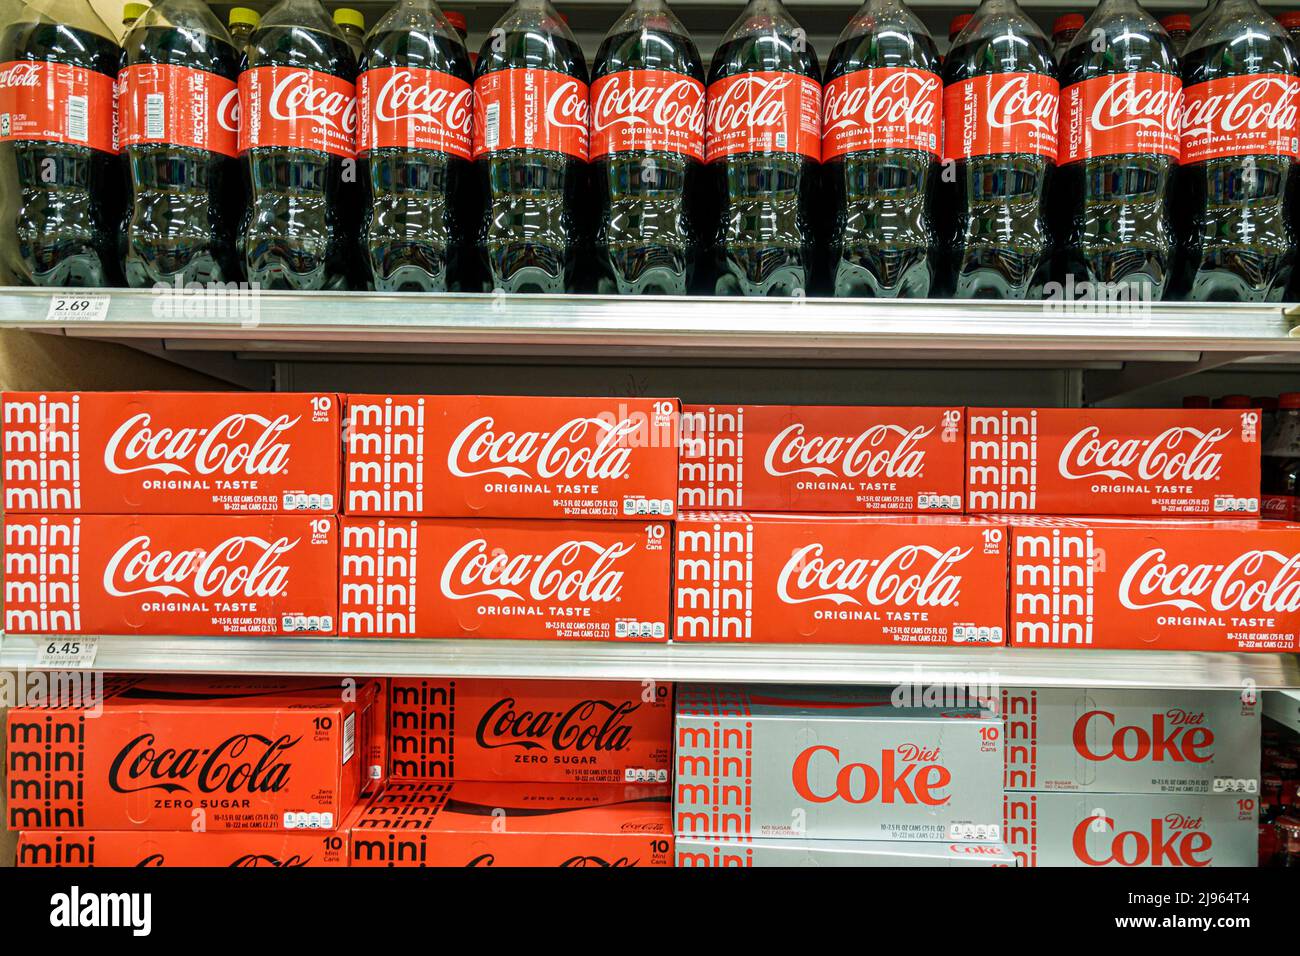 Miami Beach Florida, Publix tienda de comestibles supermercado mostrar venta estantes dentro de estantes interiores, productos Coca Cola refrescos cola soda Foto de stock